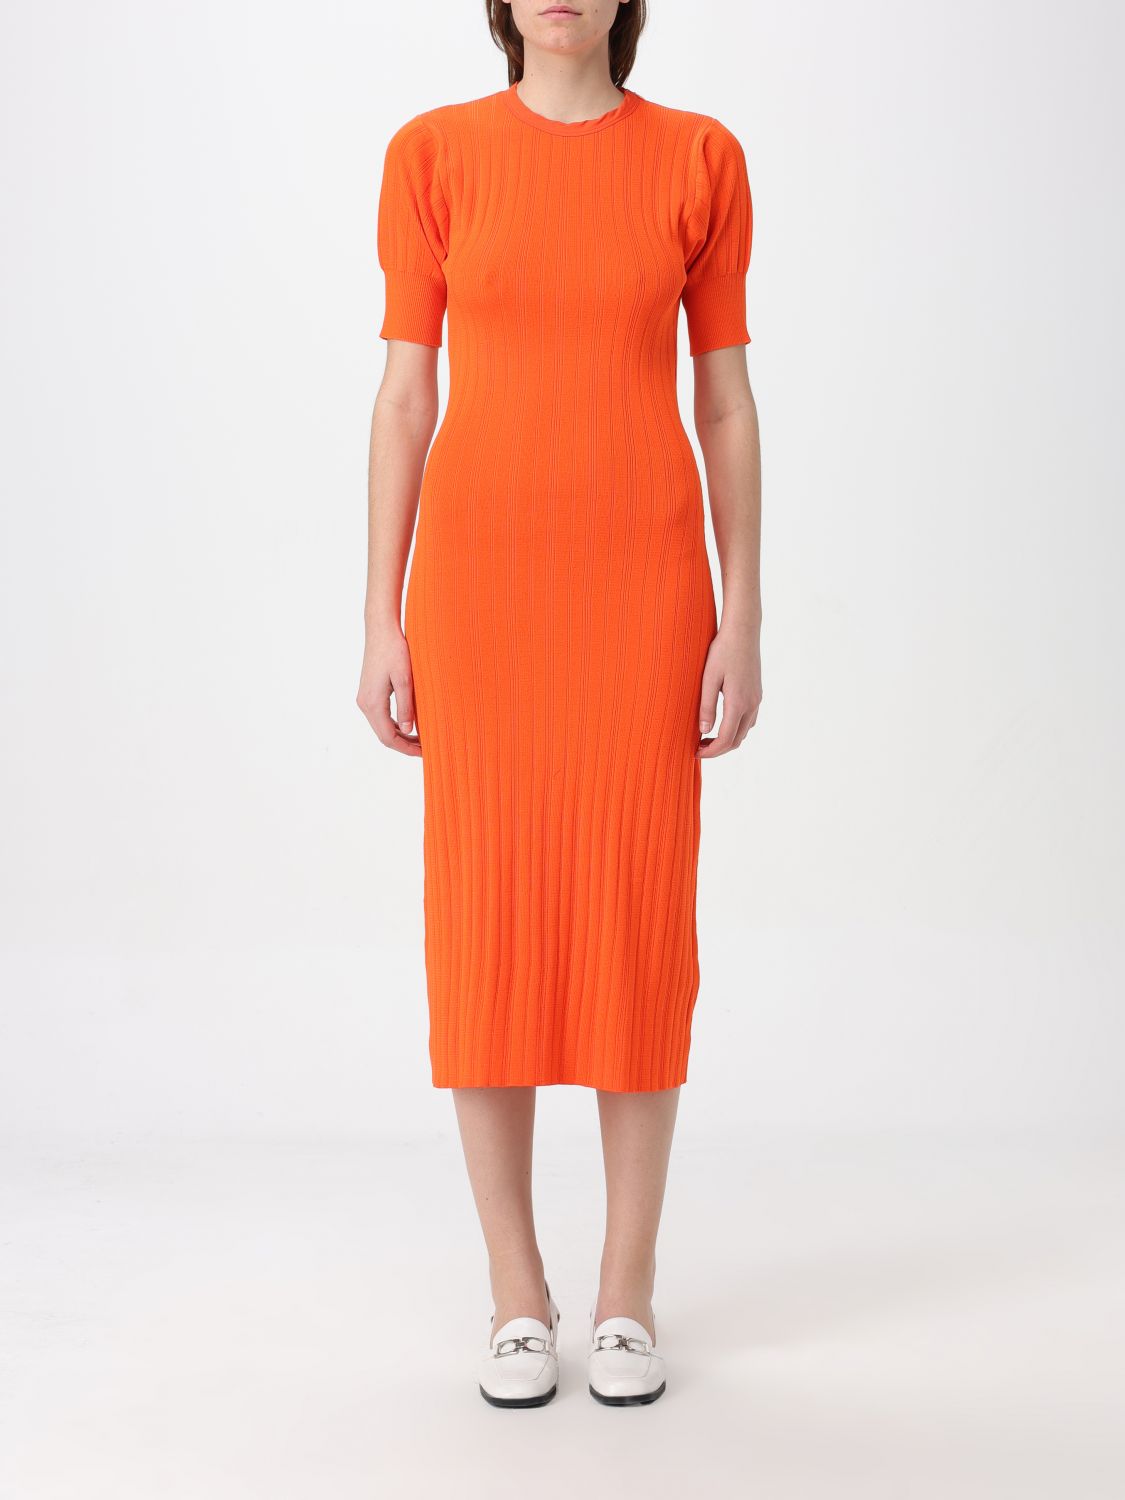 Shop Apc Dress A.p.c. Woman Color Orange